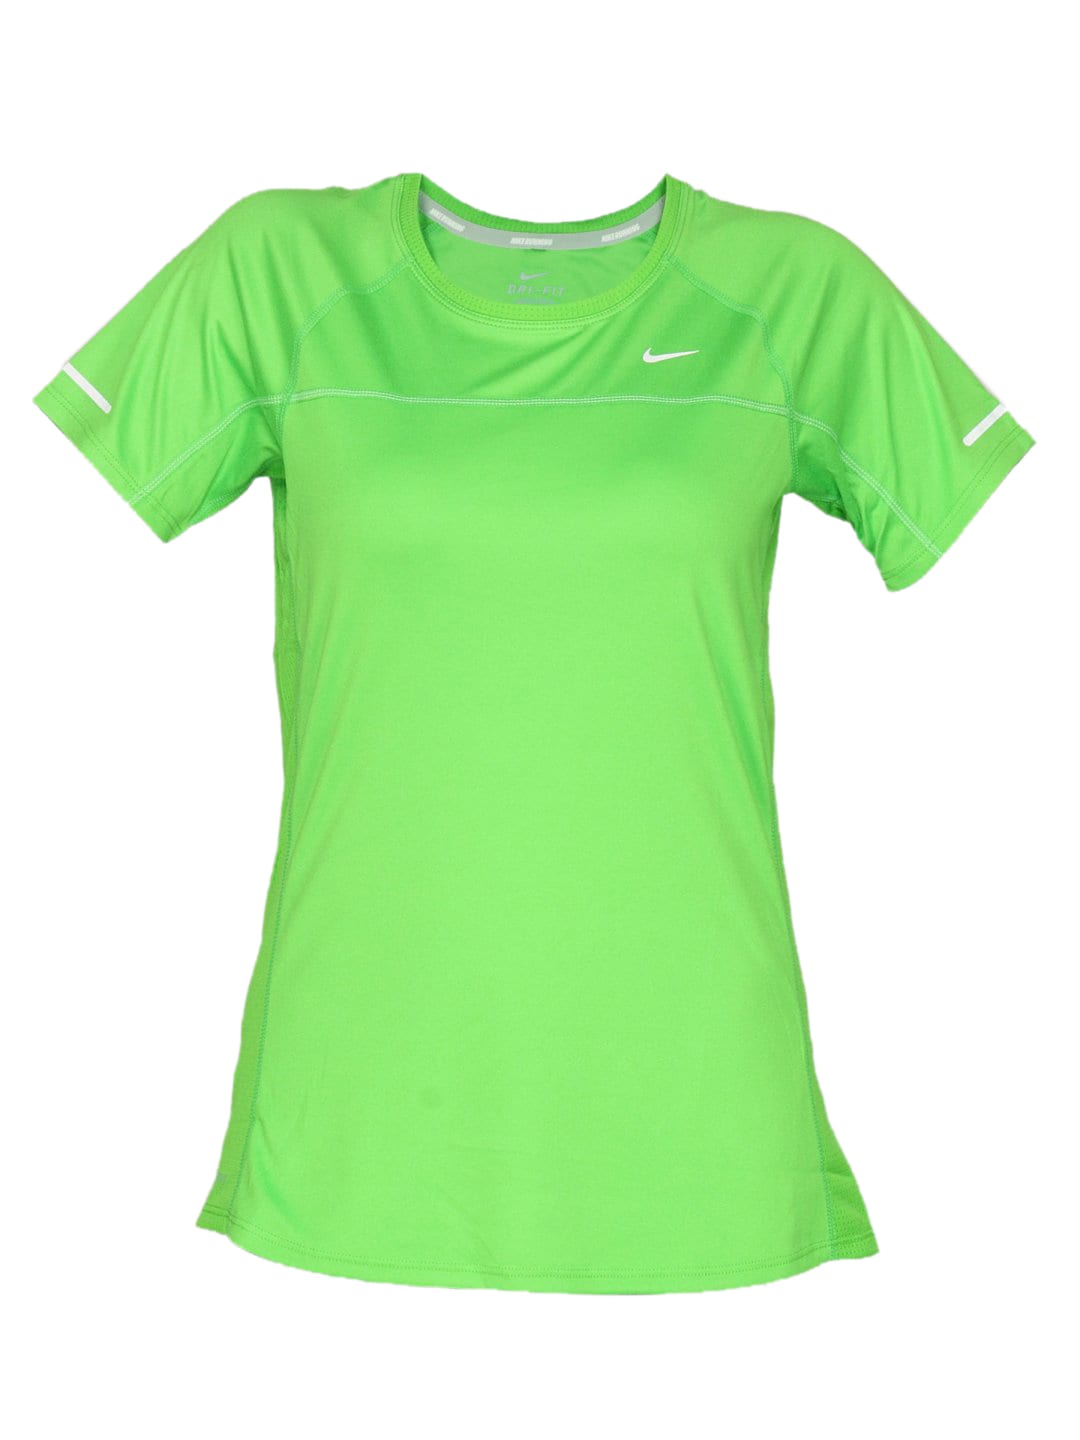 Nike Women's Miler Yellow T-shirt